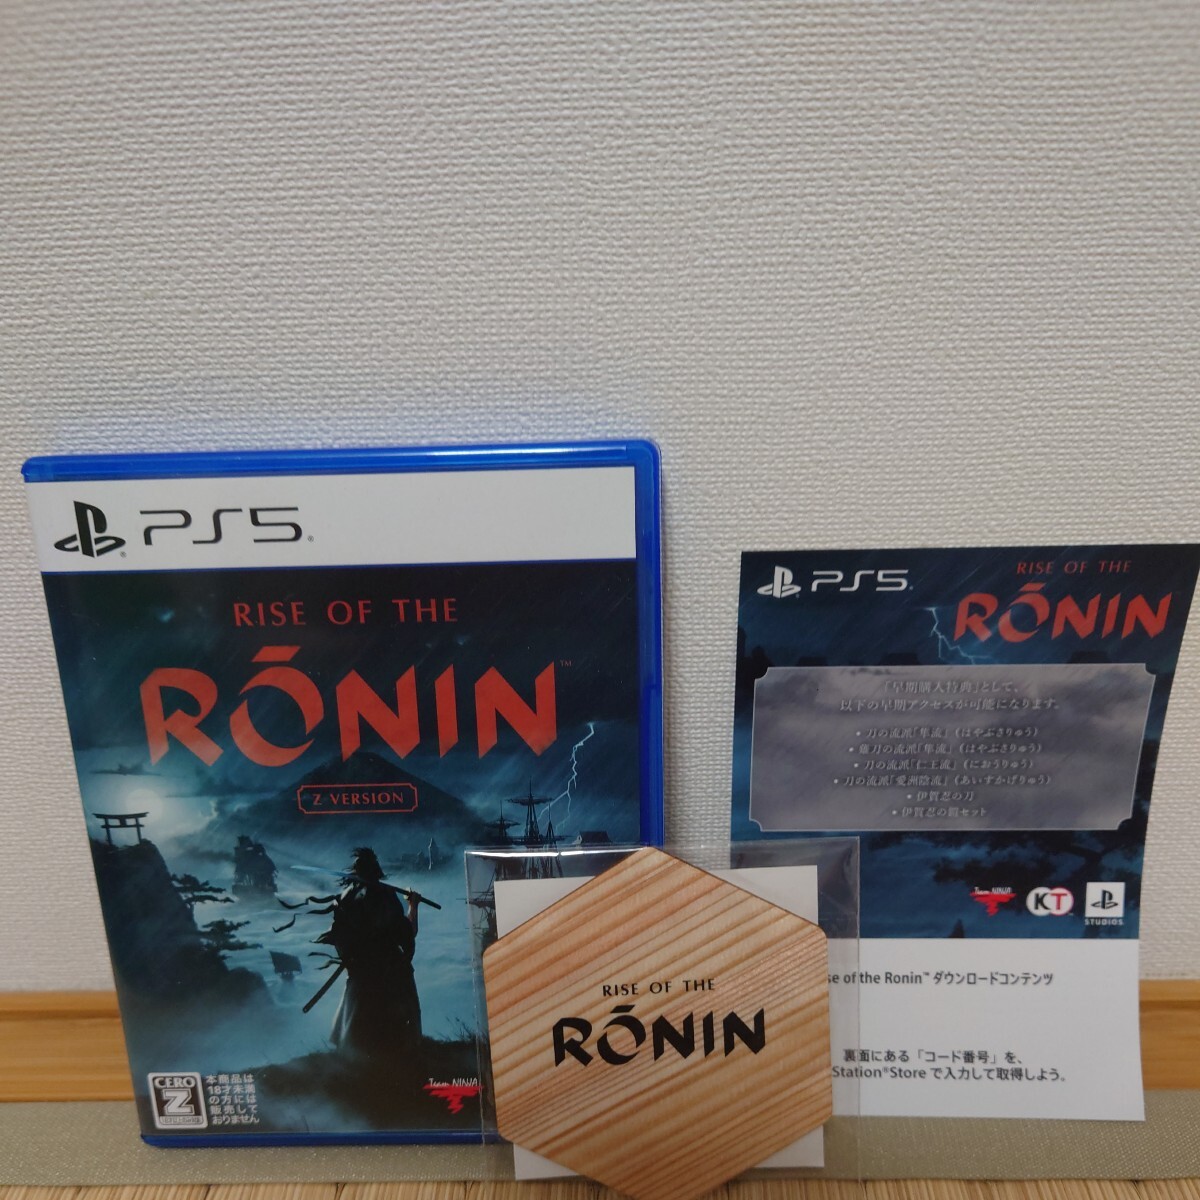 美品PS5 Rise of the Ronin Z version ライズオブザローニン 早期購入特典ダウンロードコードとゲオオリジナル予約特典木製コースター付き_特典コードとゲオ特典コースター付き